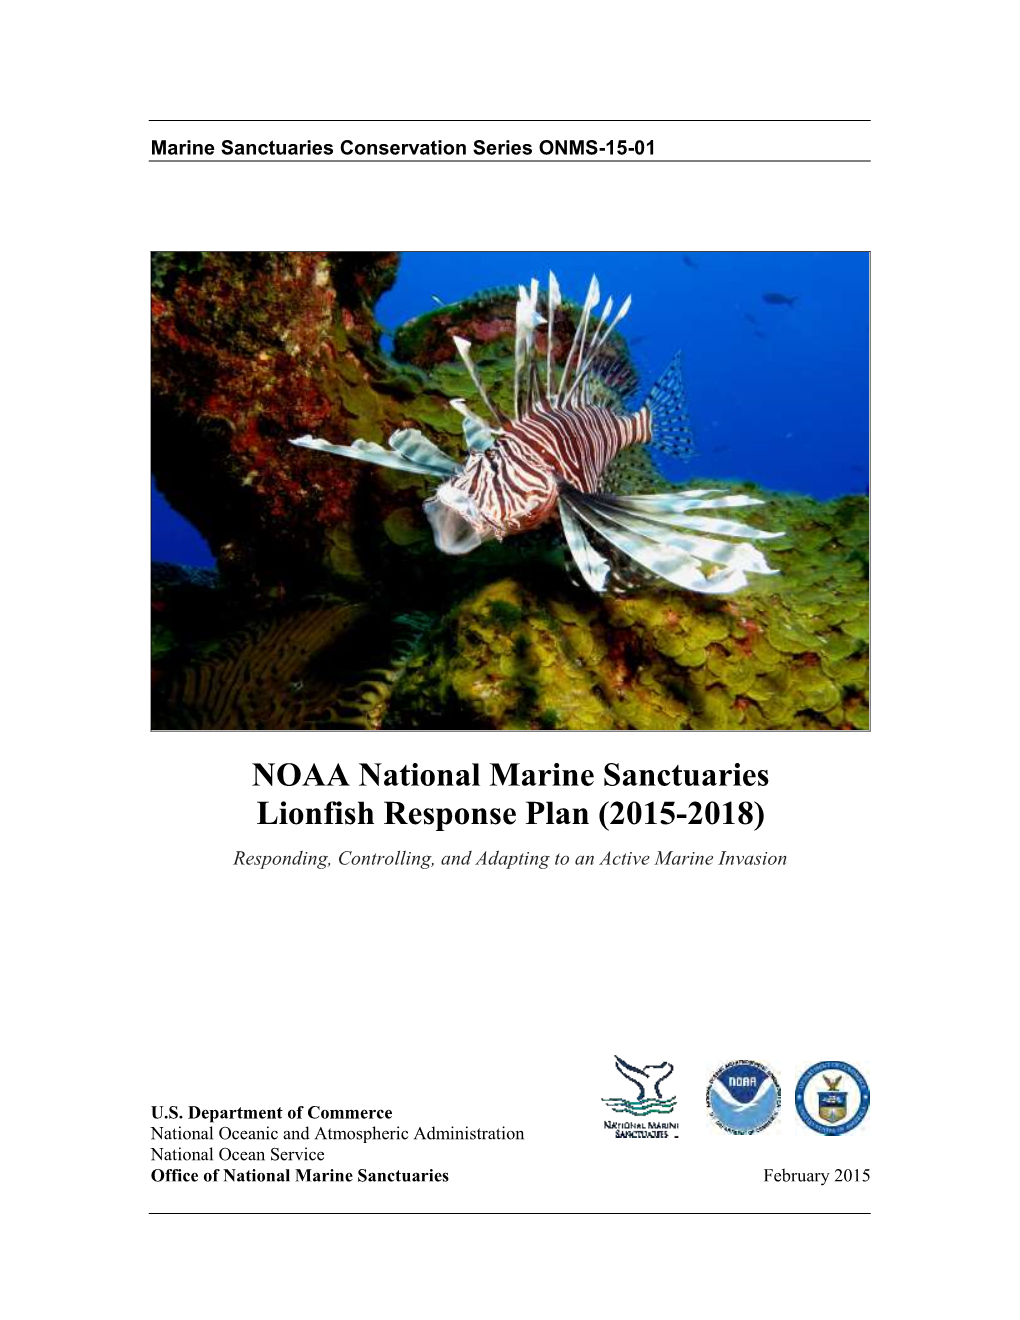 NOAA National Marine Sanctuaries Lionfish Response Plan (2015-2018)